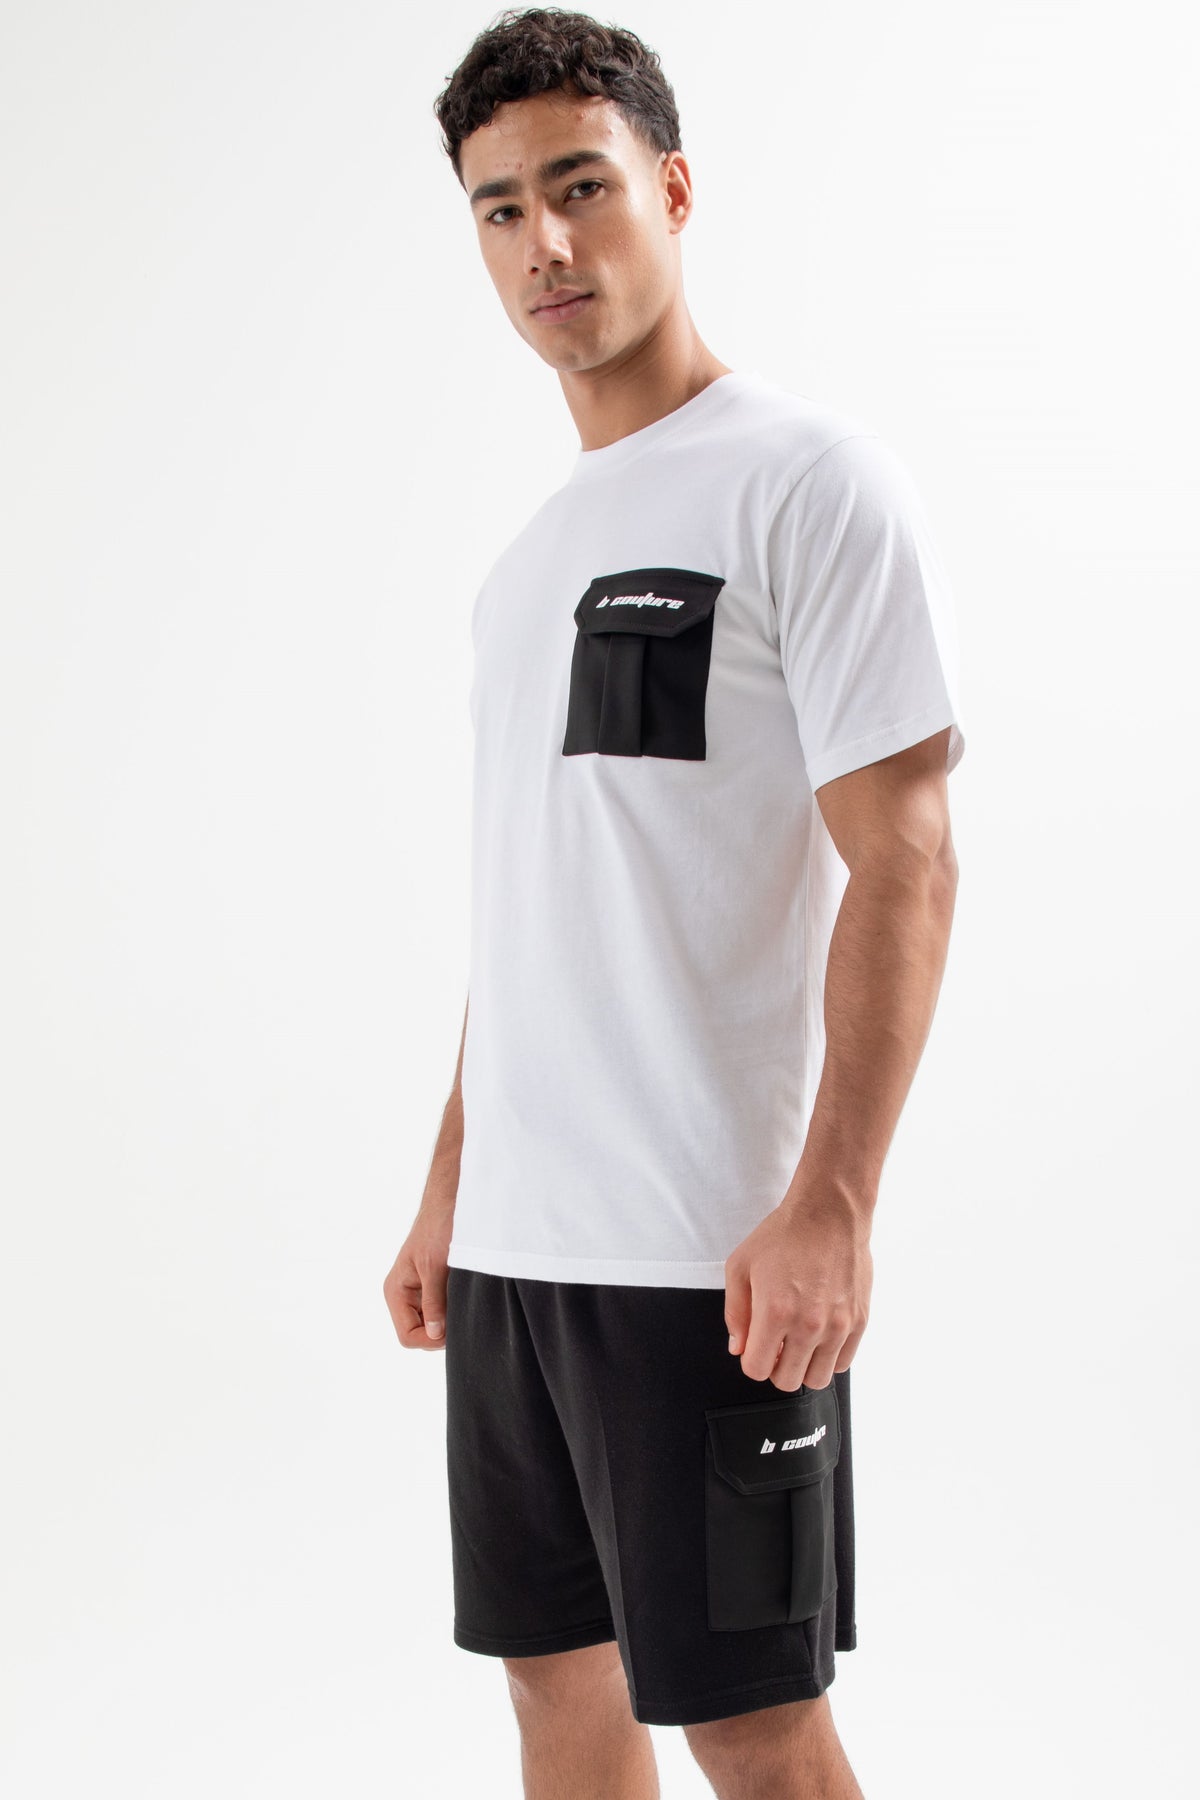 Petersham T-Shirt & Short Set - White/Black